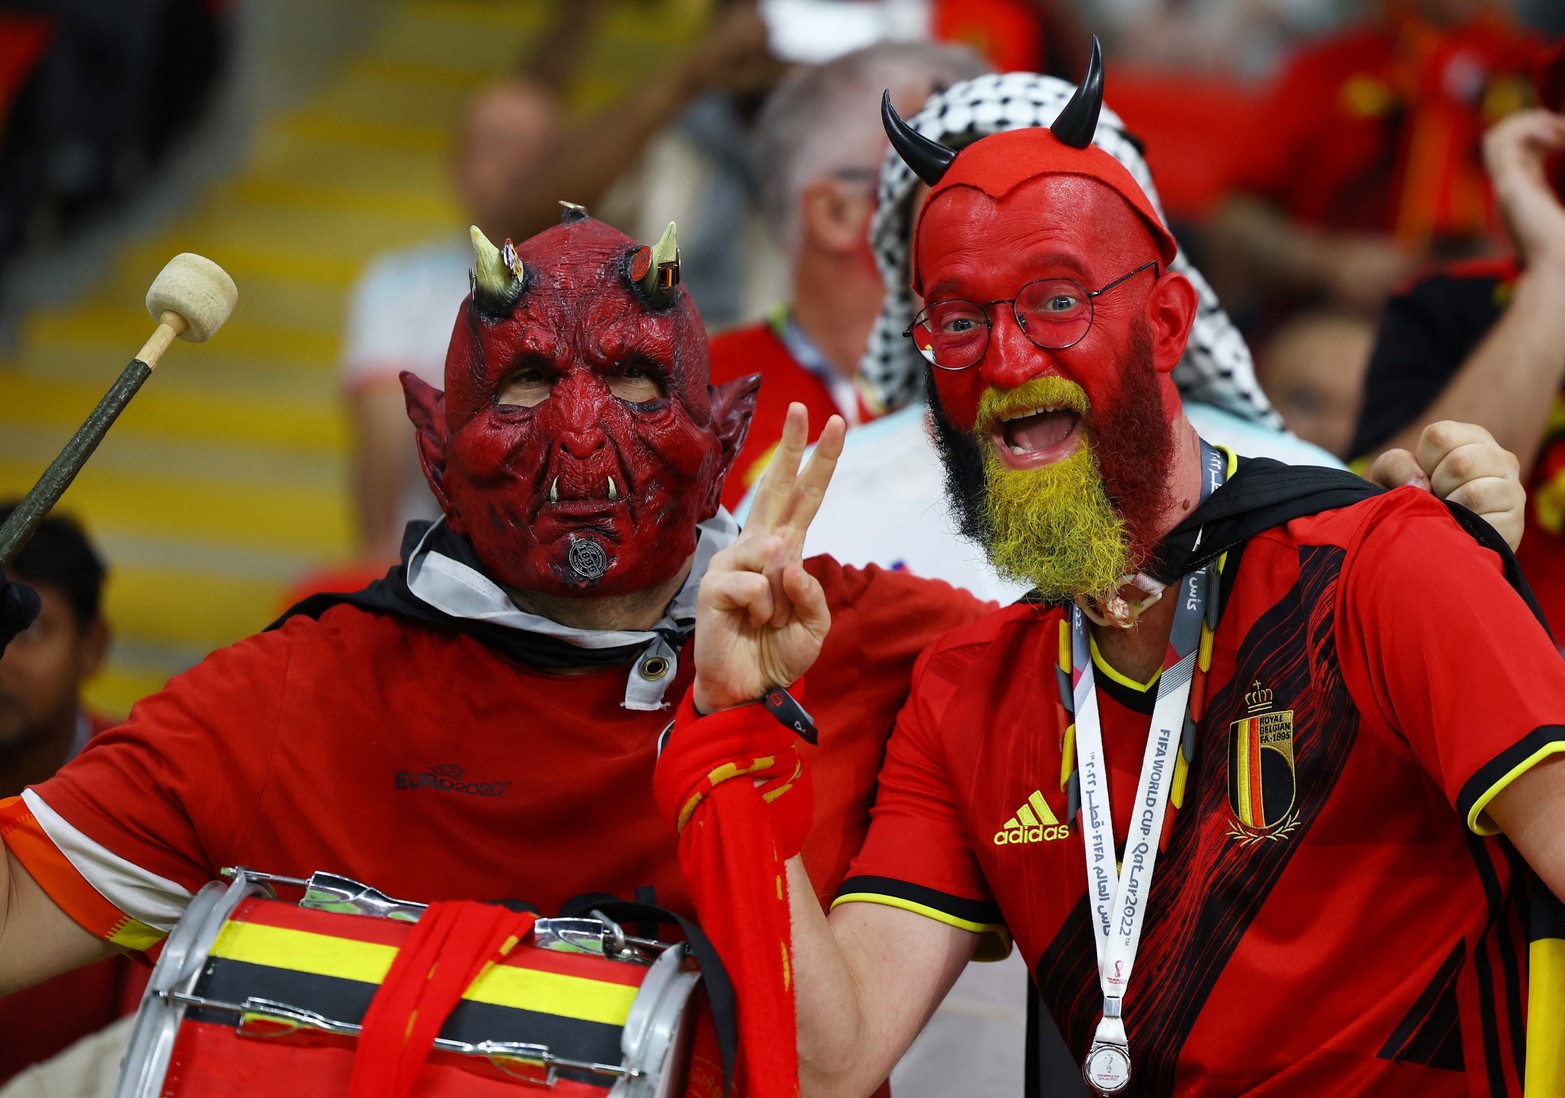 Bélgica derrotó 1 a 0 a Canadá por la primera fecha del Grupo F del Mundial Qatar 2022.